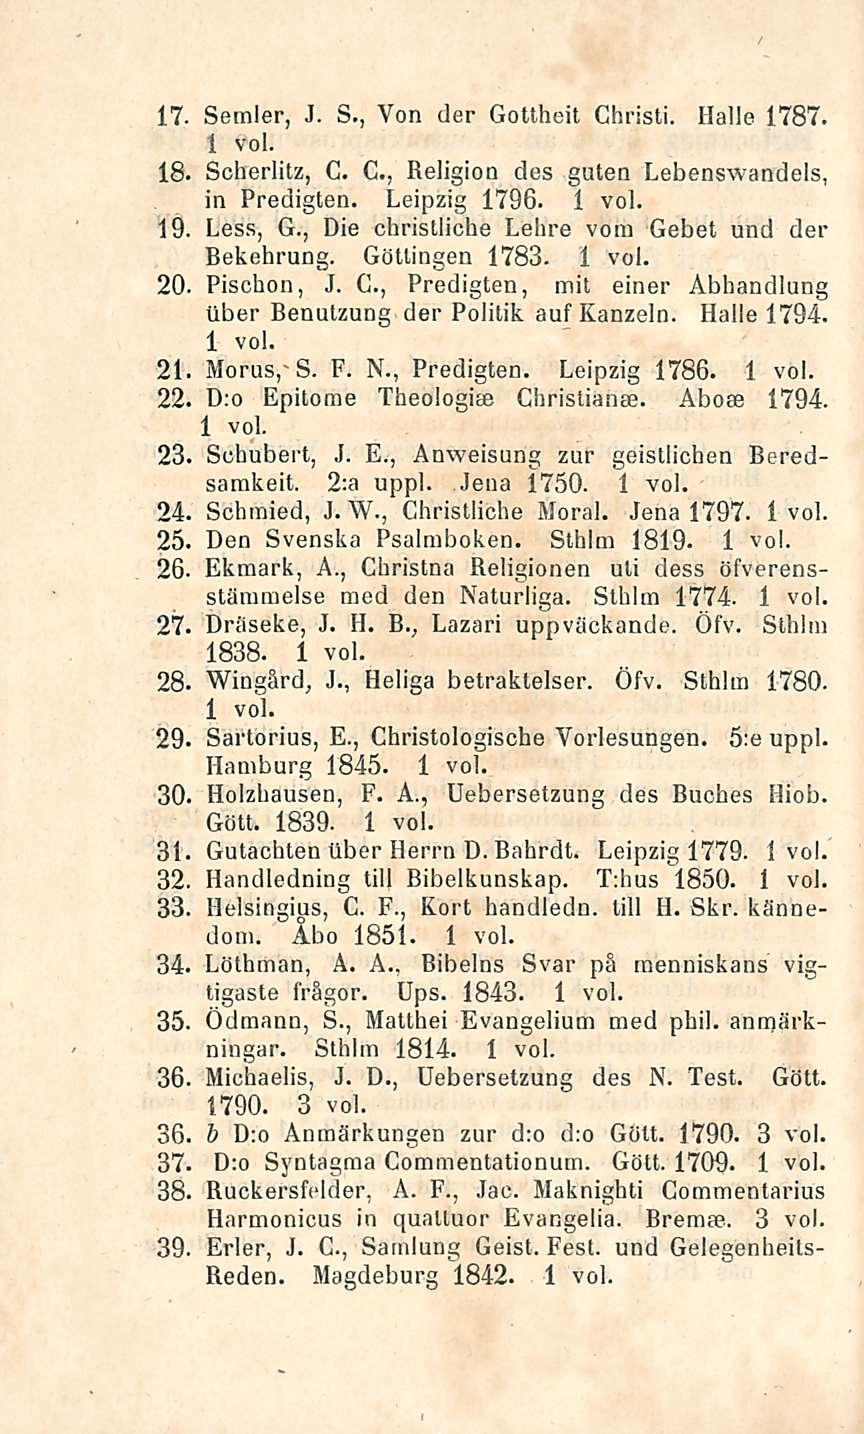 17- Sernler, J. S., Von der Gottheit Christi. Halle 1787. 18. Scherlitz, G. G., Religion des guteu Lebenswandels, in Predigten. Leipzig 1796. 19. Less, G.